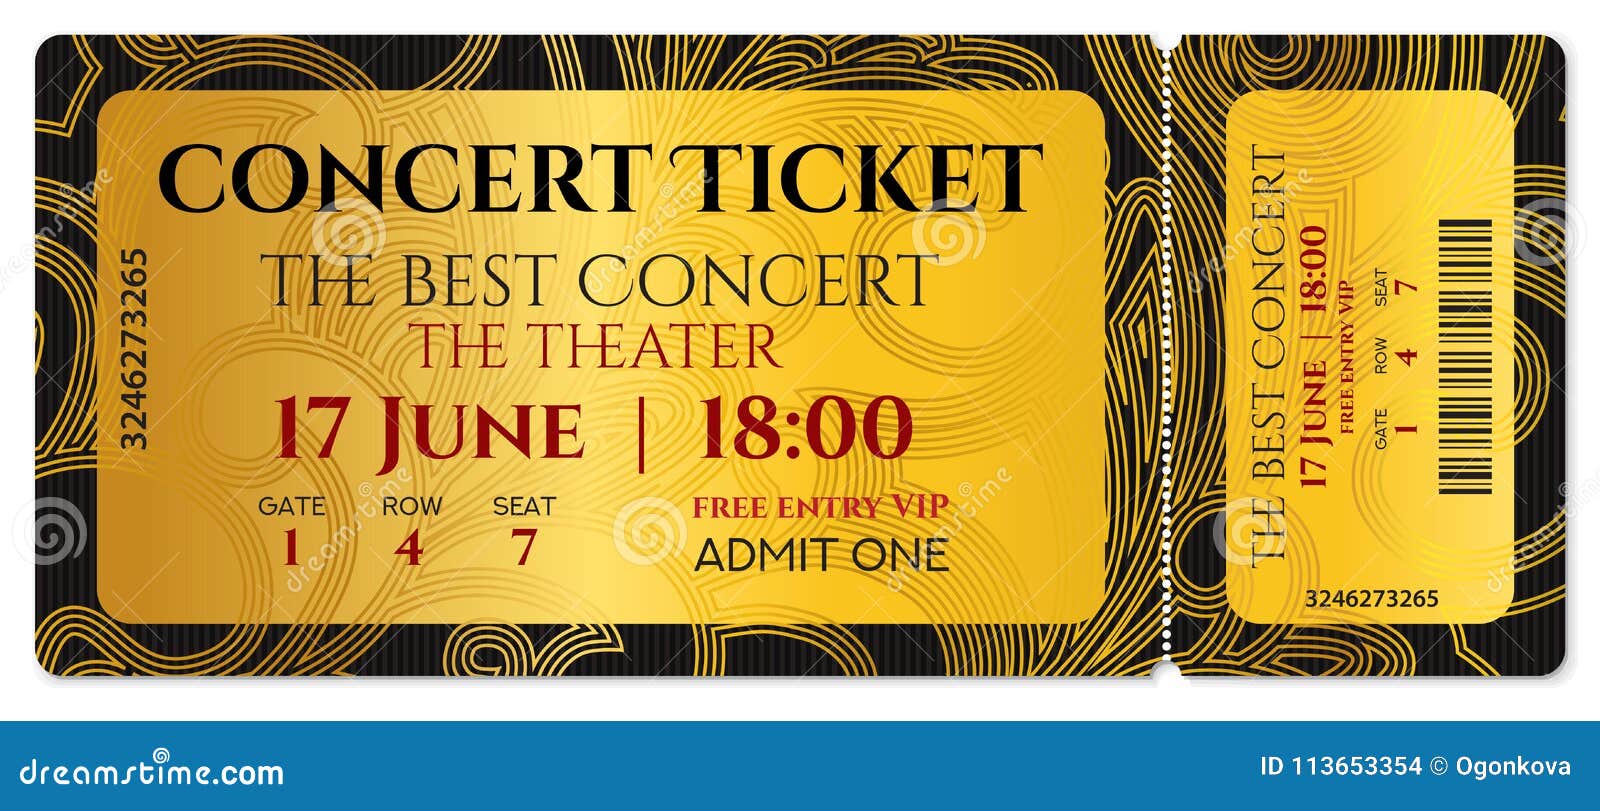 Tickets концерт. Concert ticket. Золотой билет. Билет с Купоном отрывным. Золотой билет на концерт.